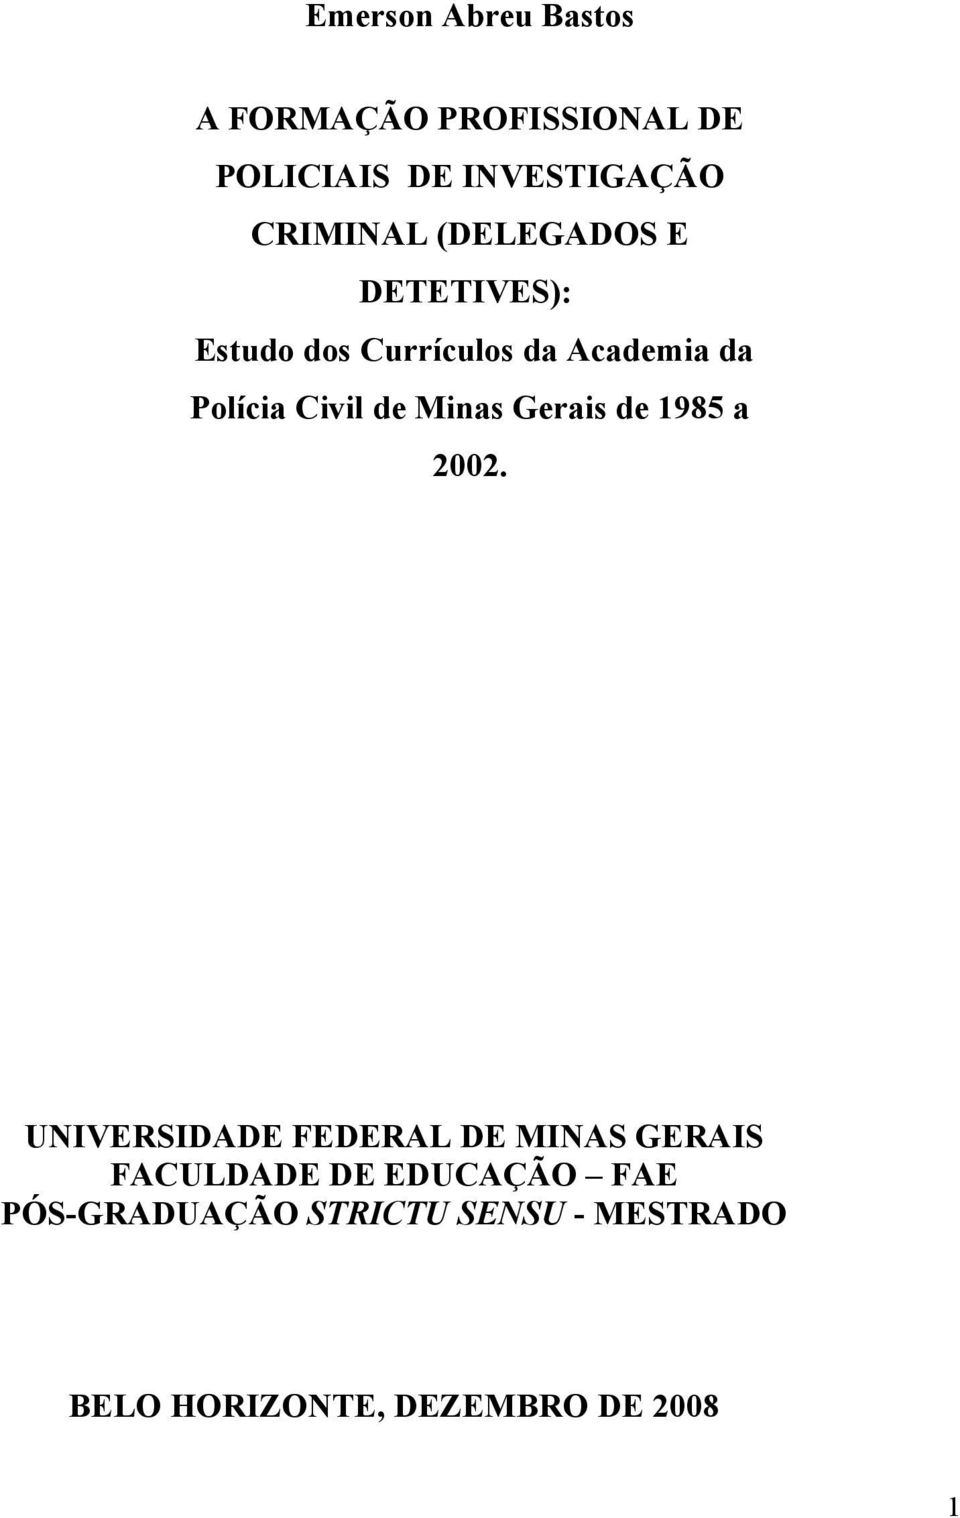 Civil de Minas Gerais de 1985 a 2002.